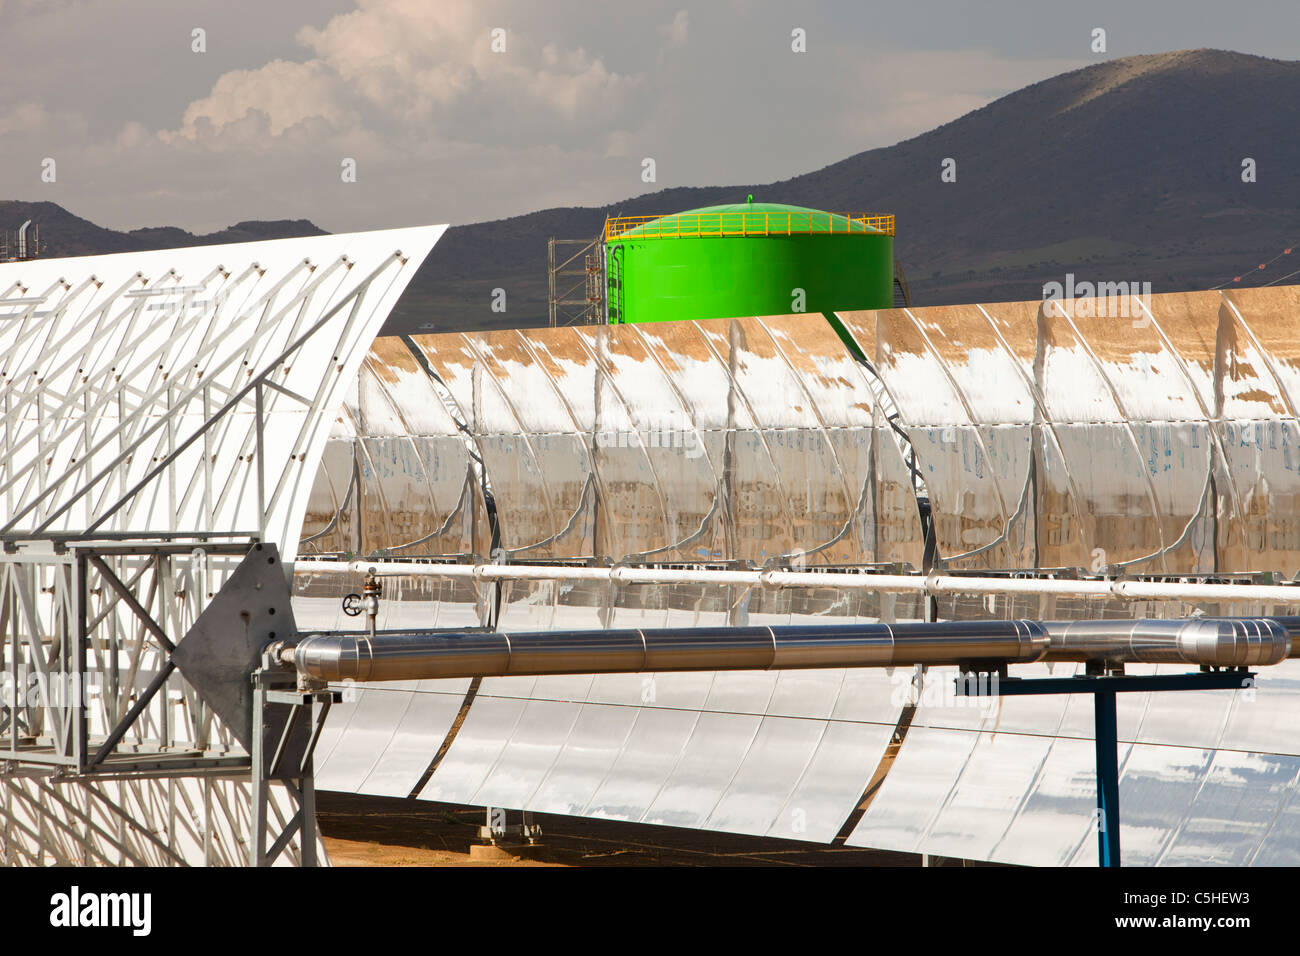 La estación de energía solar Andasol, cerca de Guadix, España, el primer y más grande del mundo de colectores cilindro parabólicos térmica solar power station Foto de stock